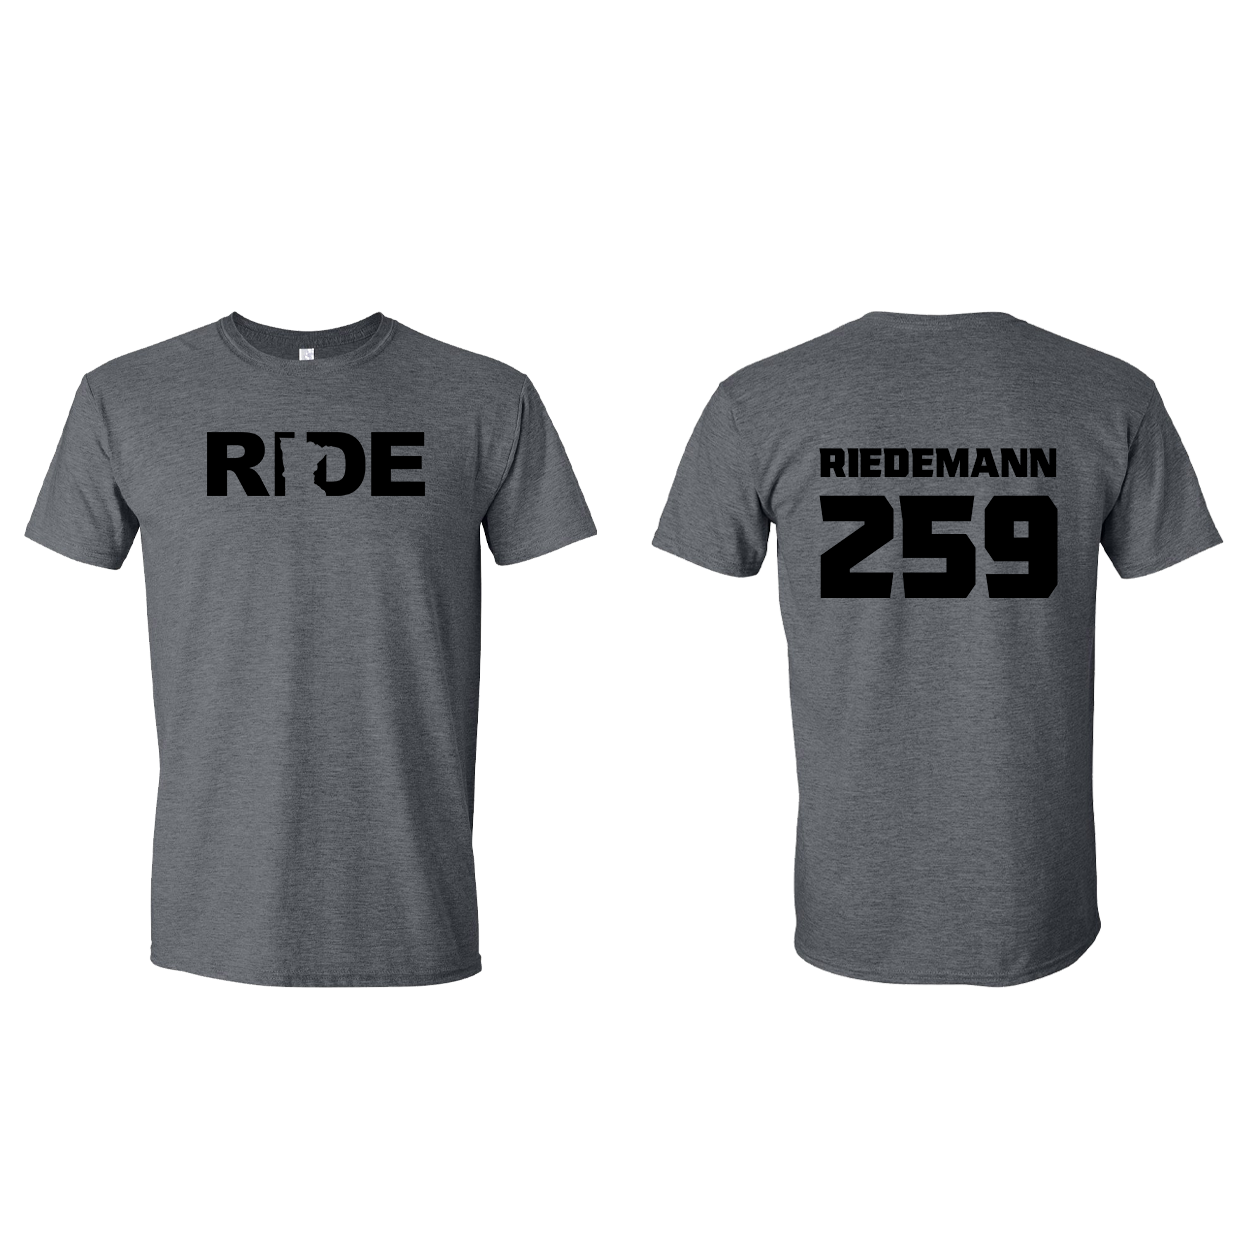 FXR BMX Race Team Classic Athlete Support T-Shirt RIEDEMANN #259 Dark Heather (Black Logo)